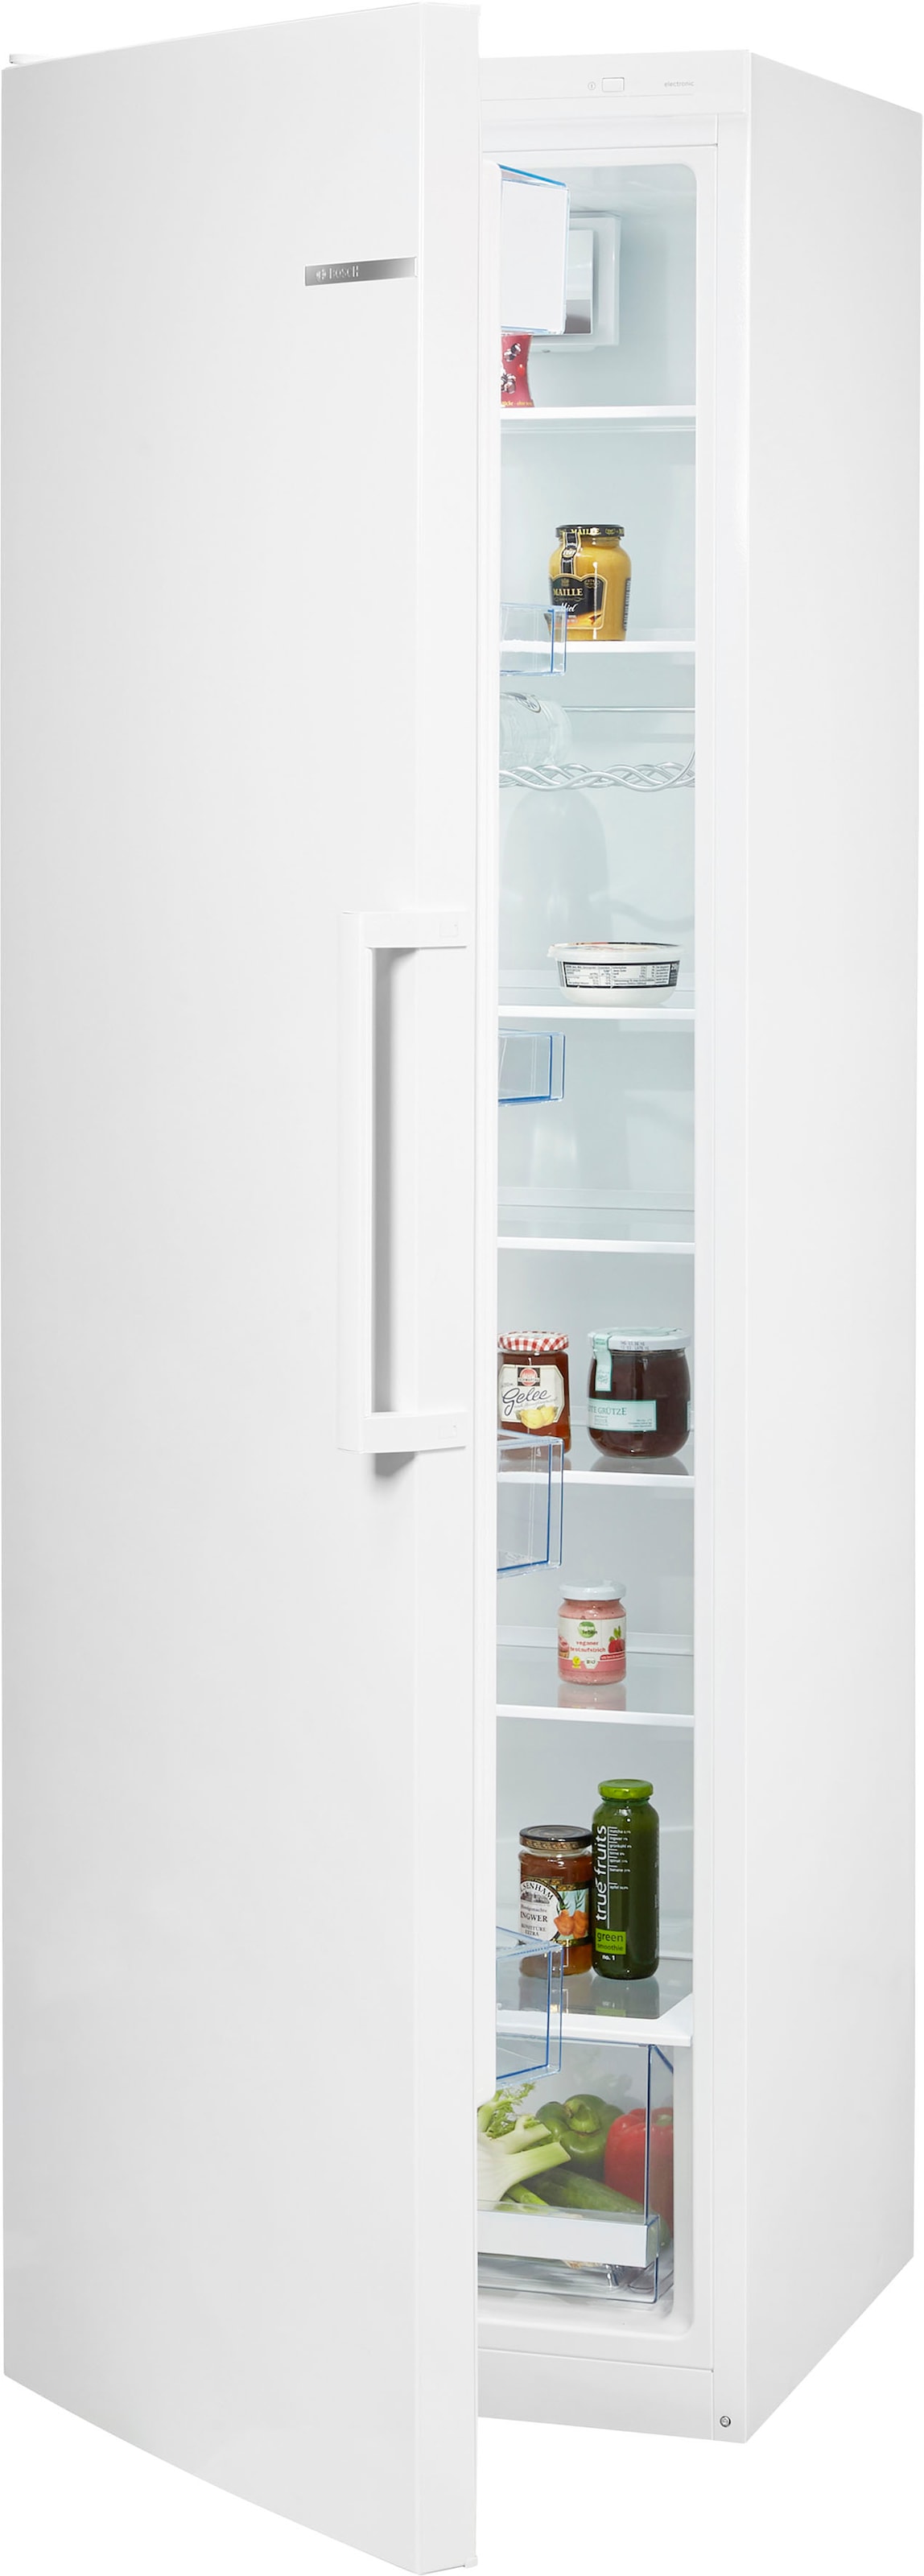 BOSCH Kühlschrank »KSV36VWEP«, KSV36VWEP, 186 cm hoch, 60 cm breit bei OTTO | Kühlschränke